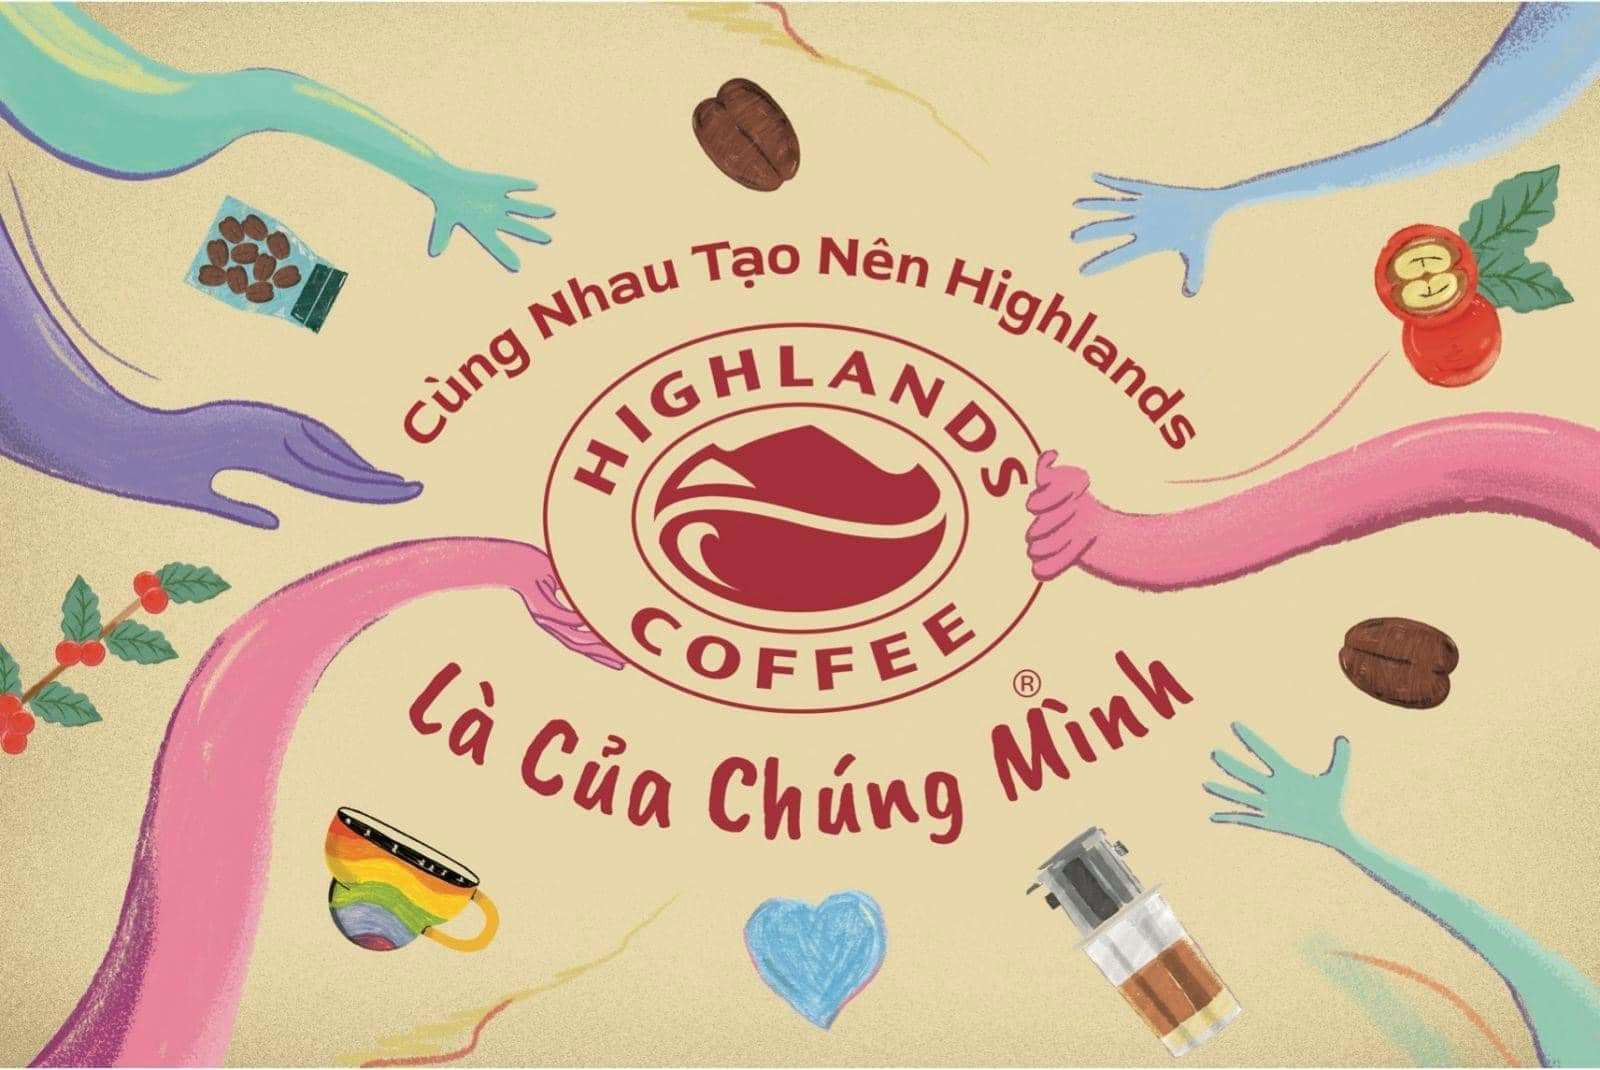 Highlands Coffee® Là Của Chúng Mình